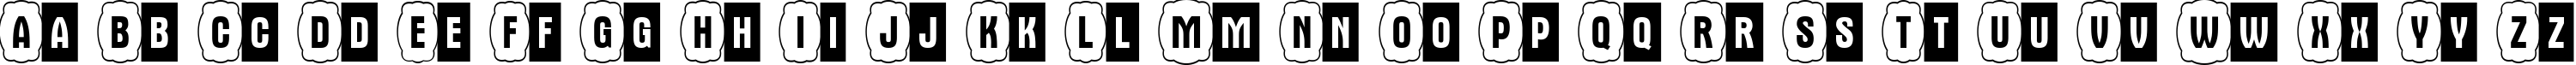 Пример написания английского алфавита шрифтом a_AlternaCmDc2Cb